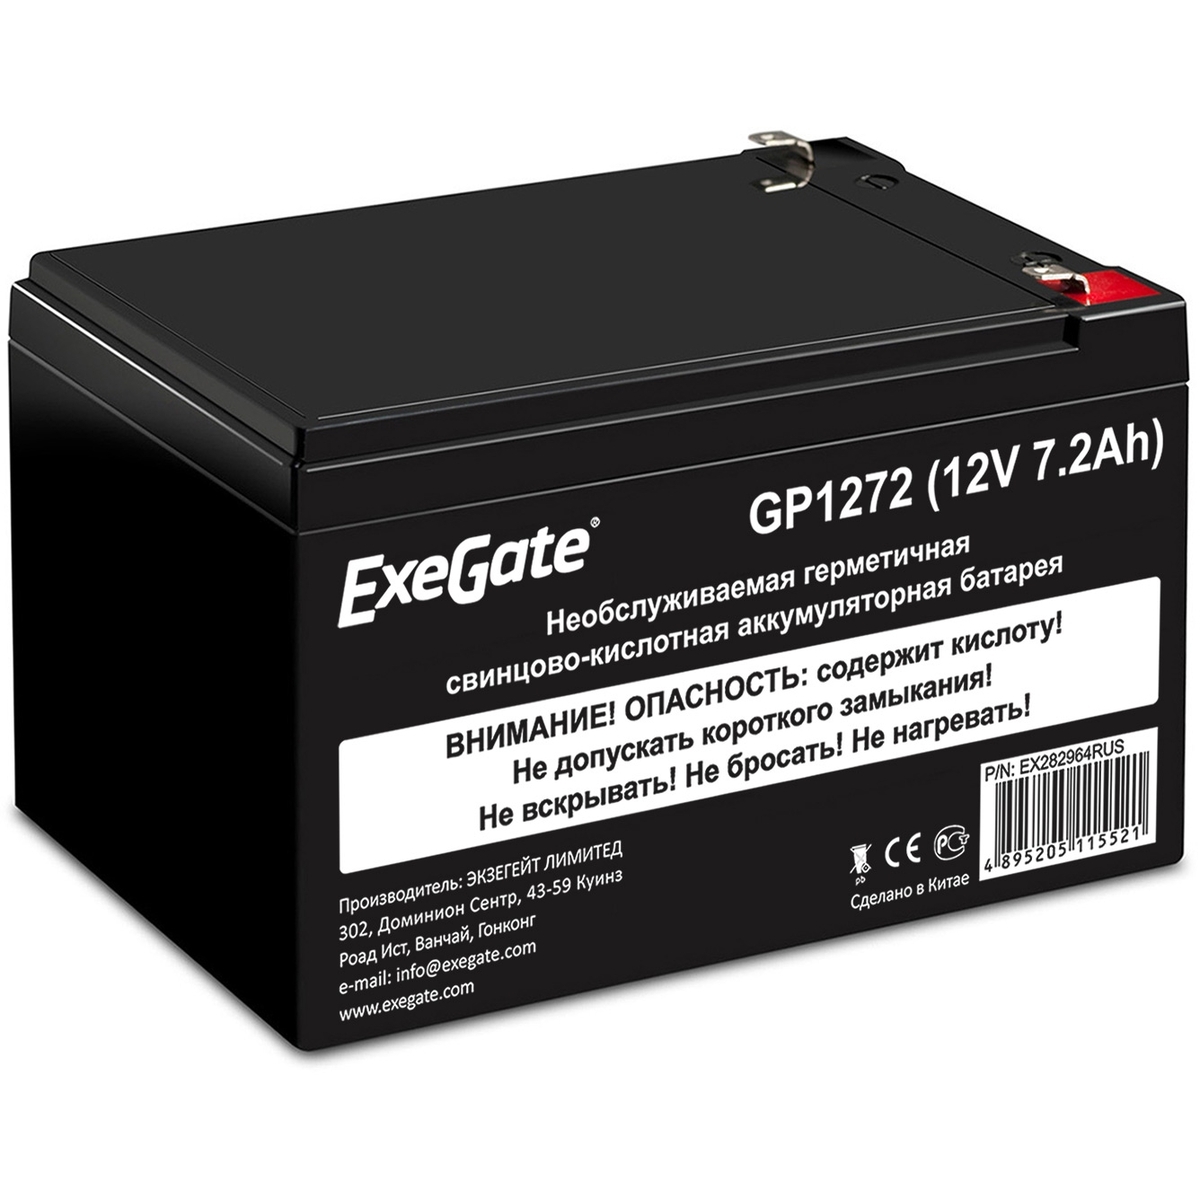 Батарея для ИБП ExeGate GP1272 (EX282964RUS) аккумулятор для ибп exegate gp1272